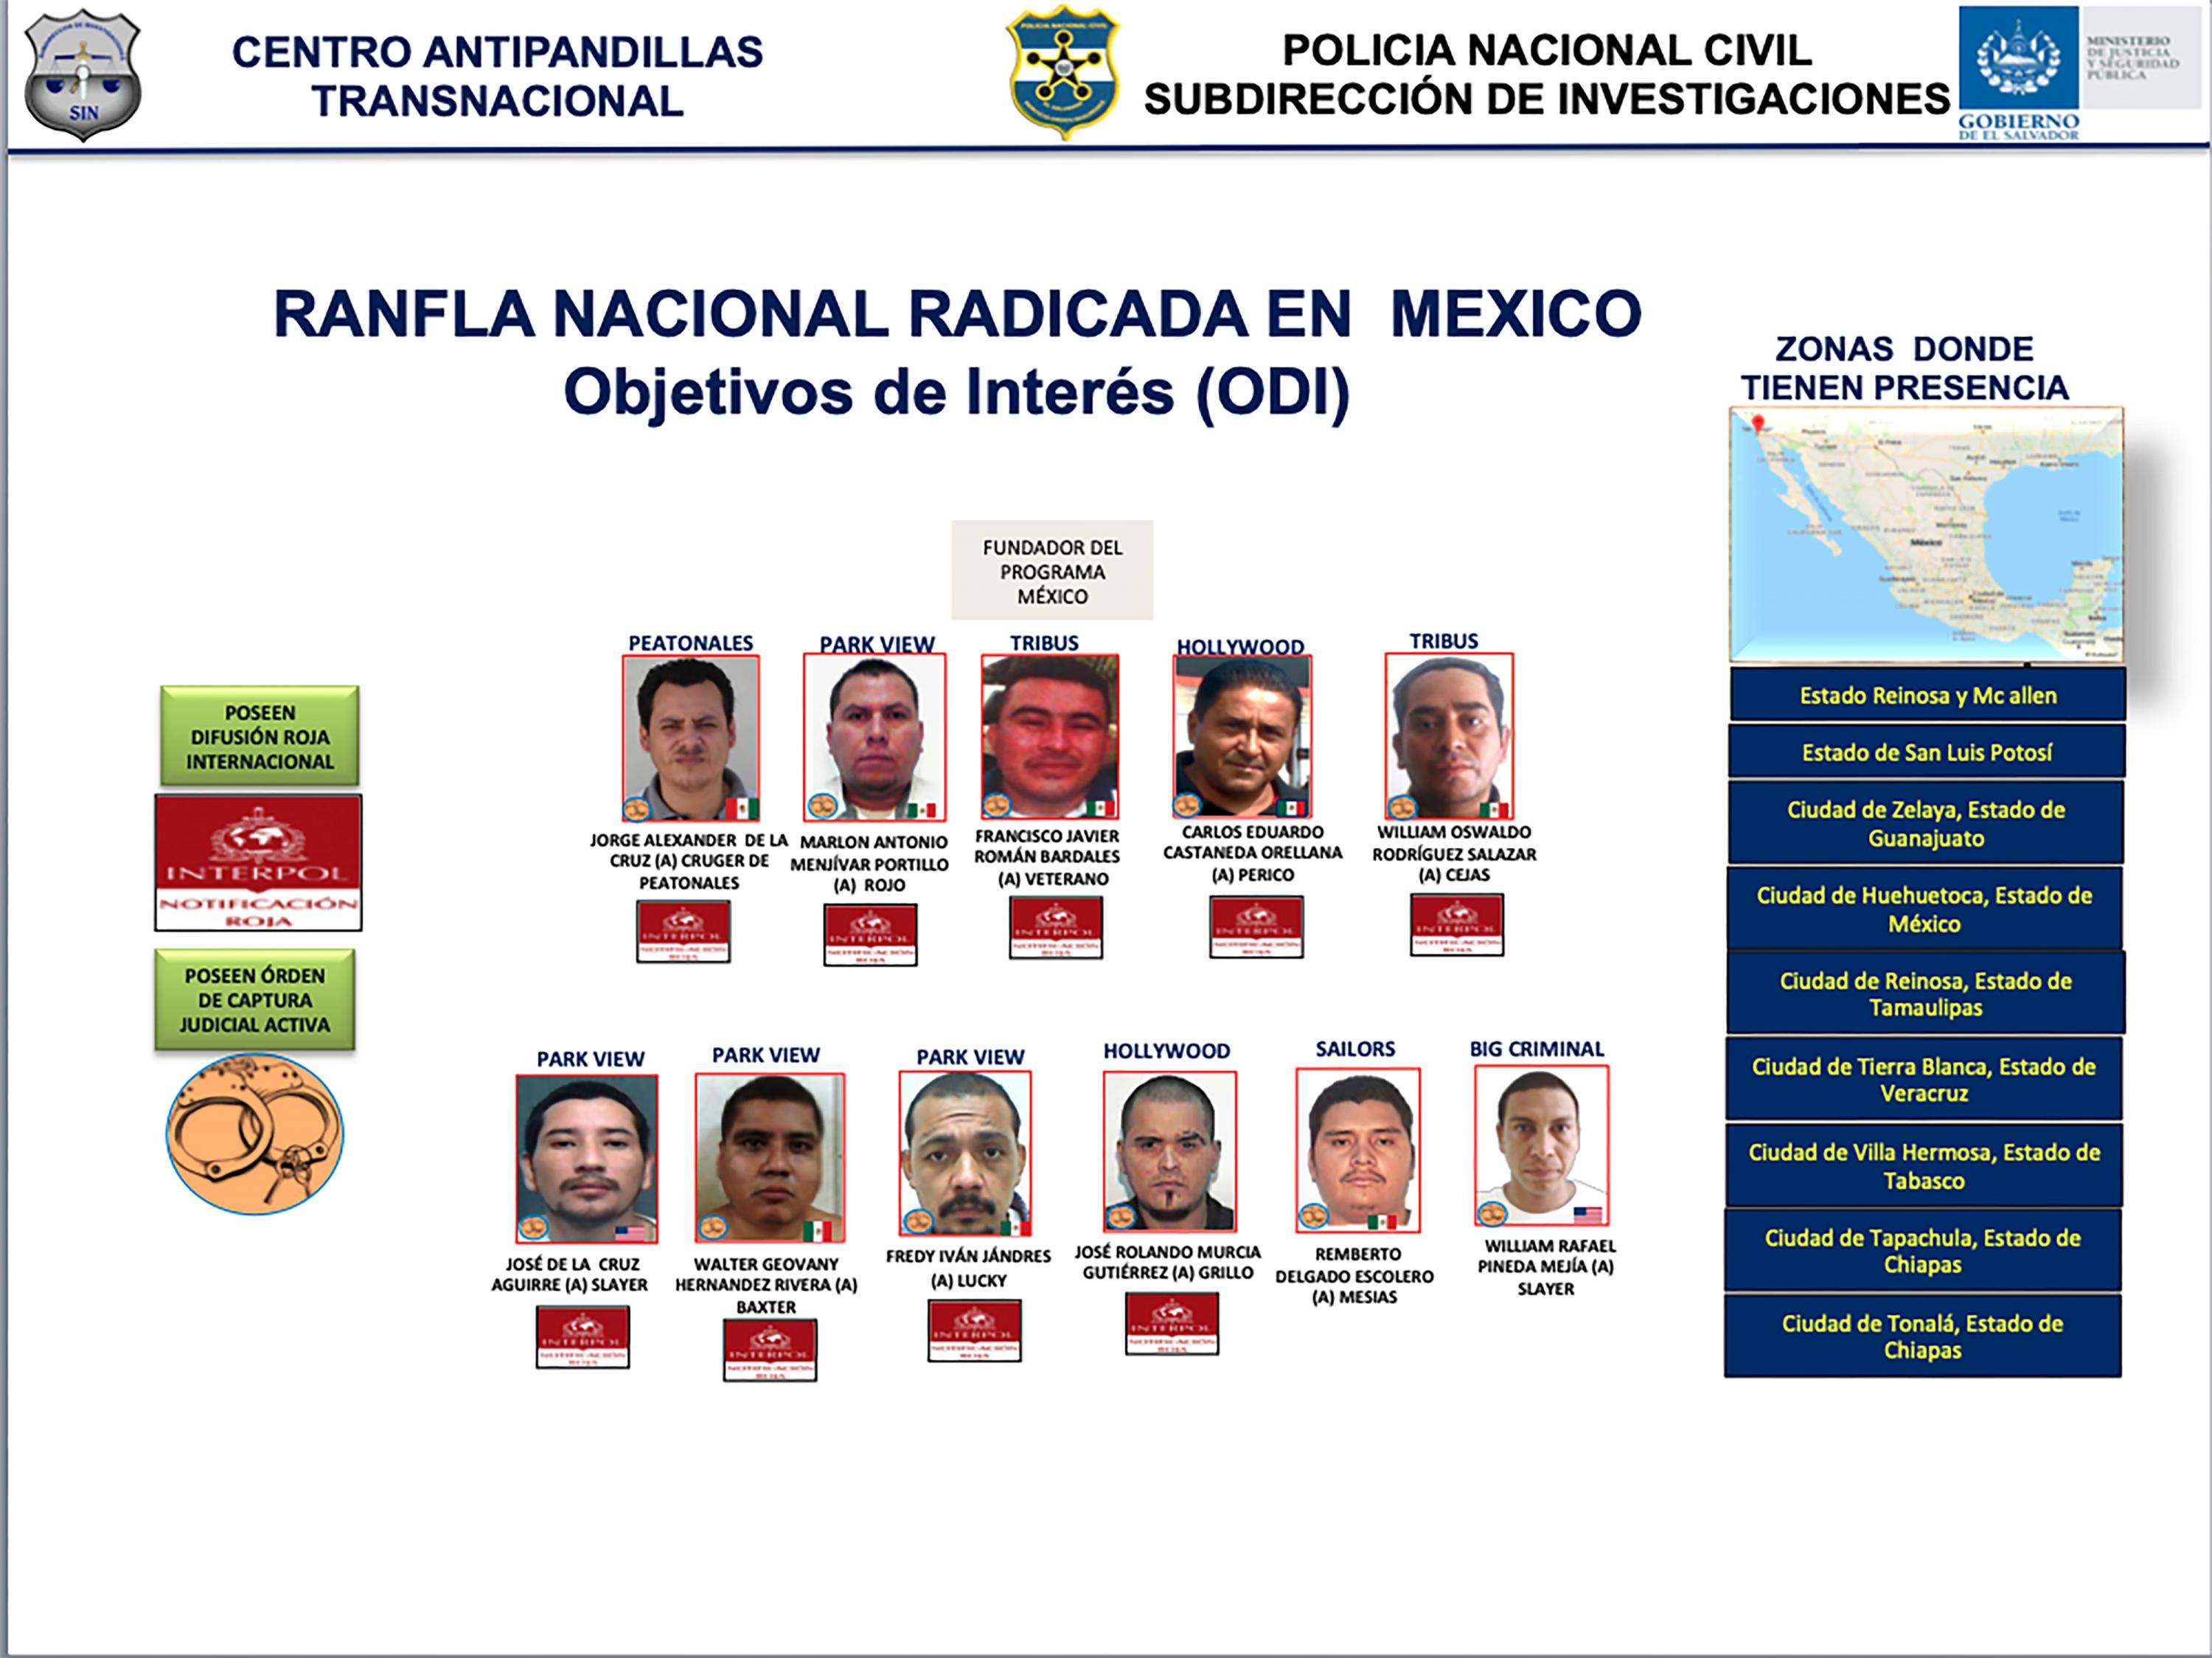 Documento del Centro Antipandillas Transnacional con sede en El Salvador que perfila a los ranfleros de la MS-13 que estaban en México. 